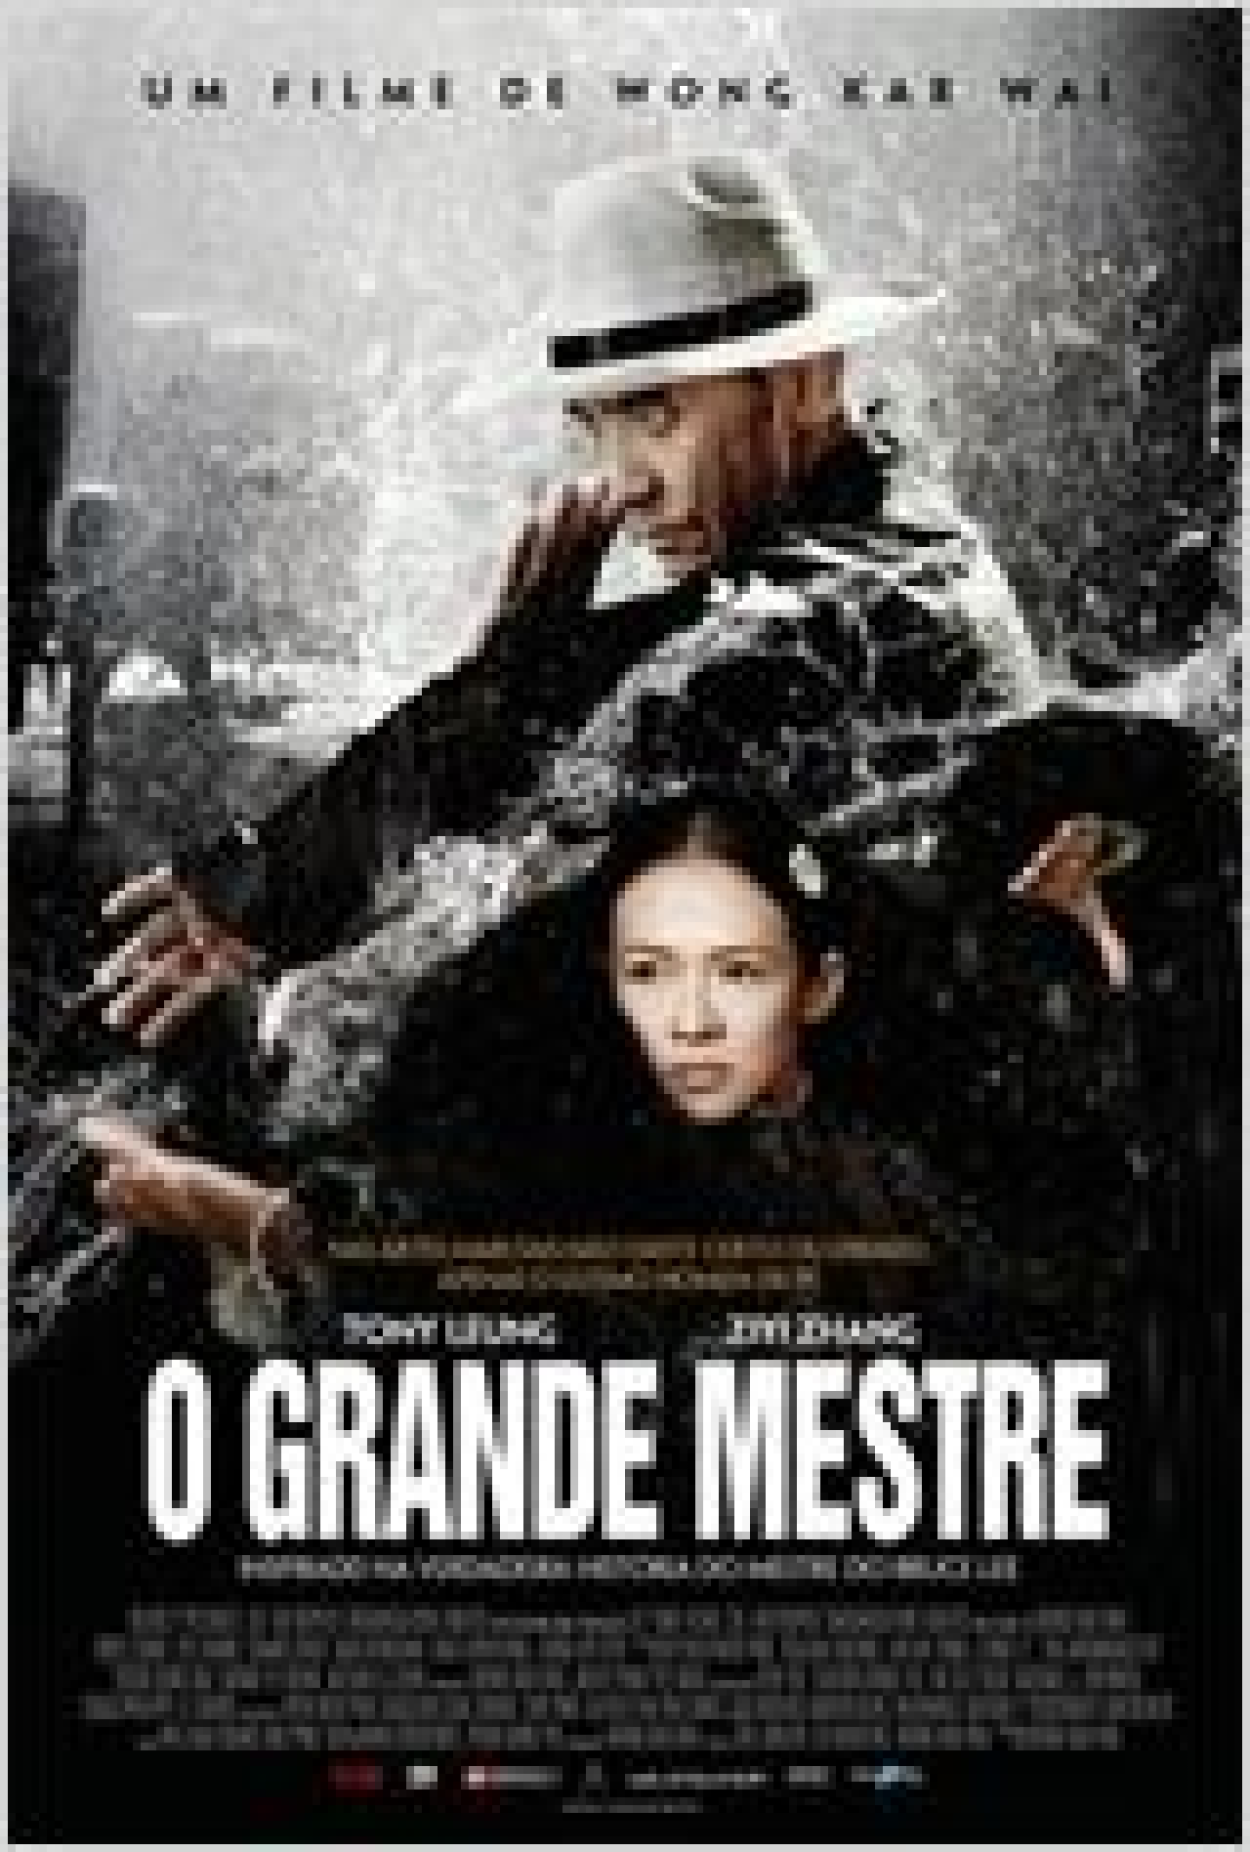 O Grande Mestre Beberrão (Filme), Trailer, Sinopse e Curiosidades - Cinema10